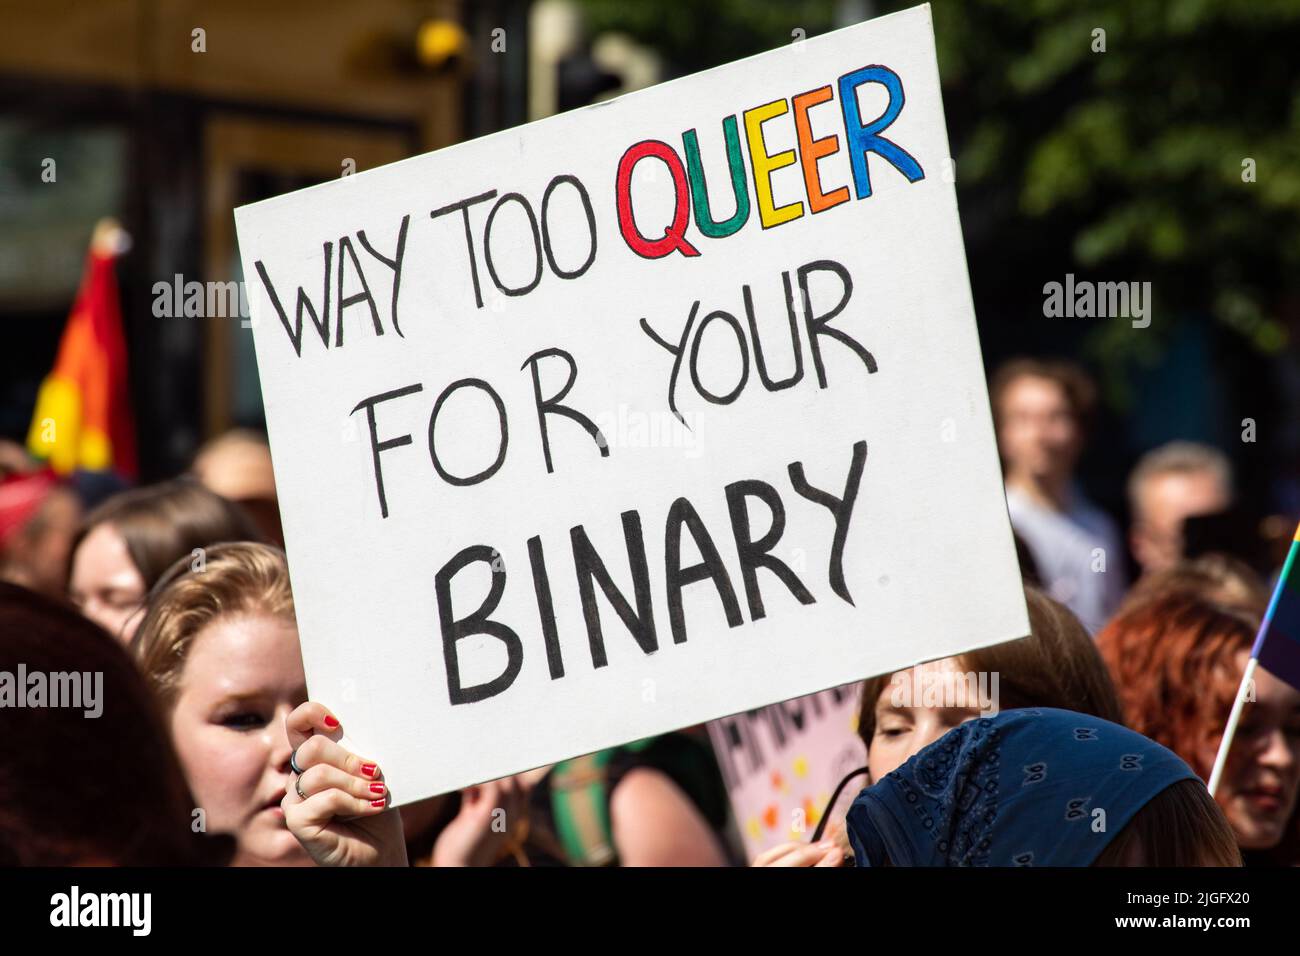 Viel zu queer für Ihre binäre. Handgeschriebenes Schild bei der Helsinki Pride 2022 Parade in Helsinki, Finnland. Stockfoto